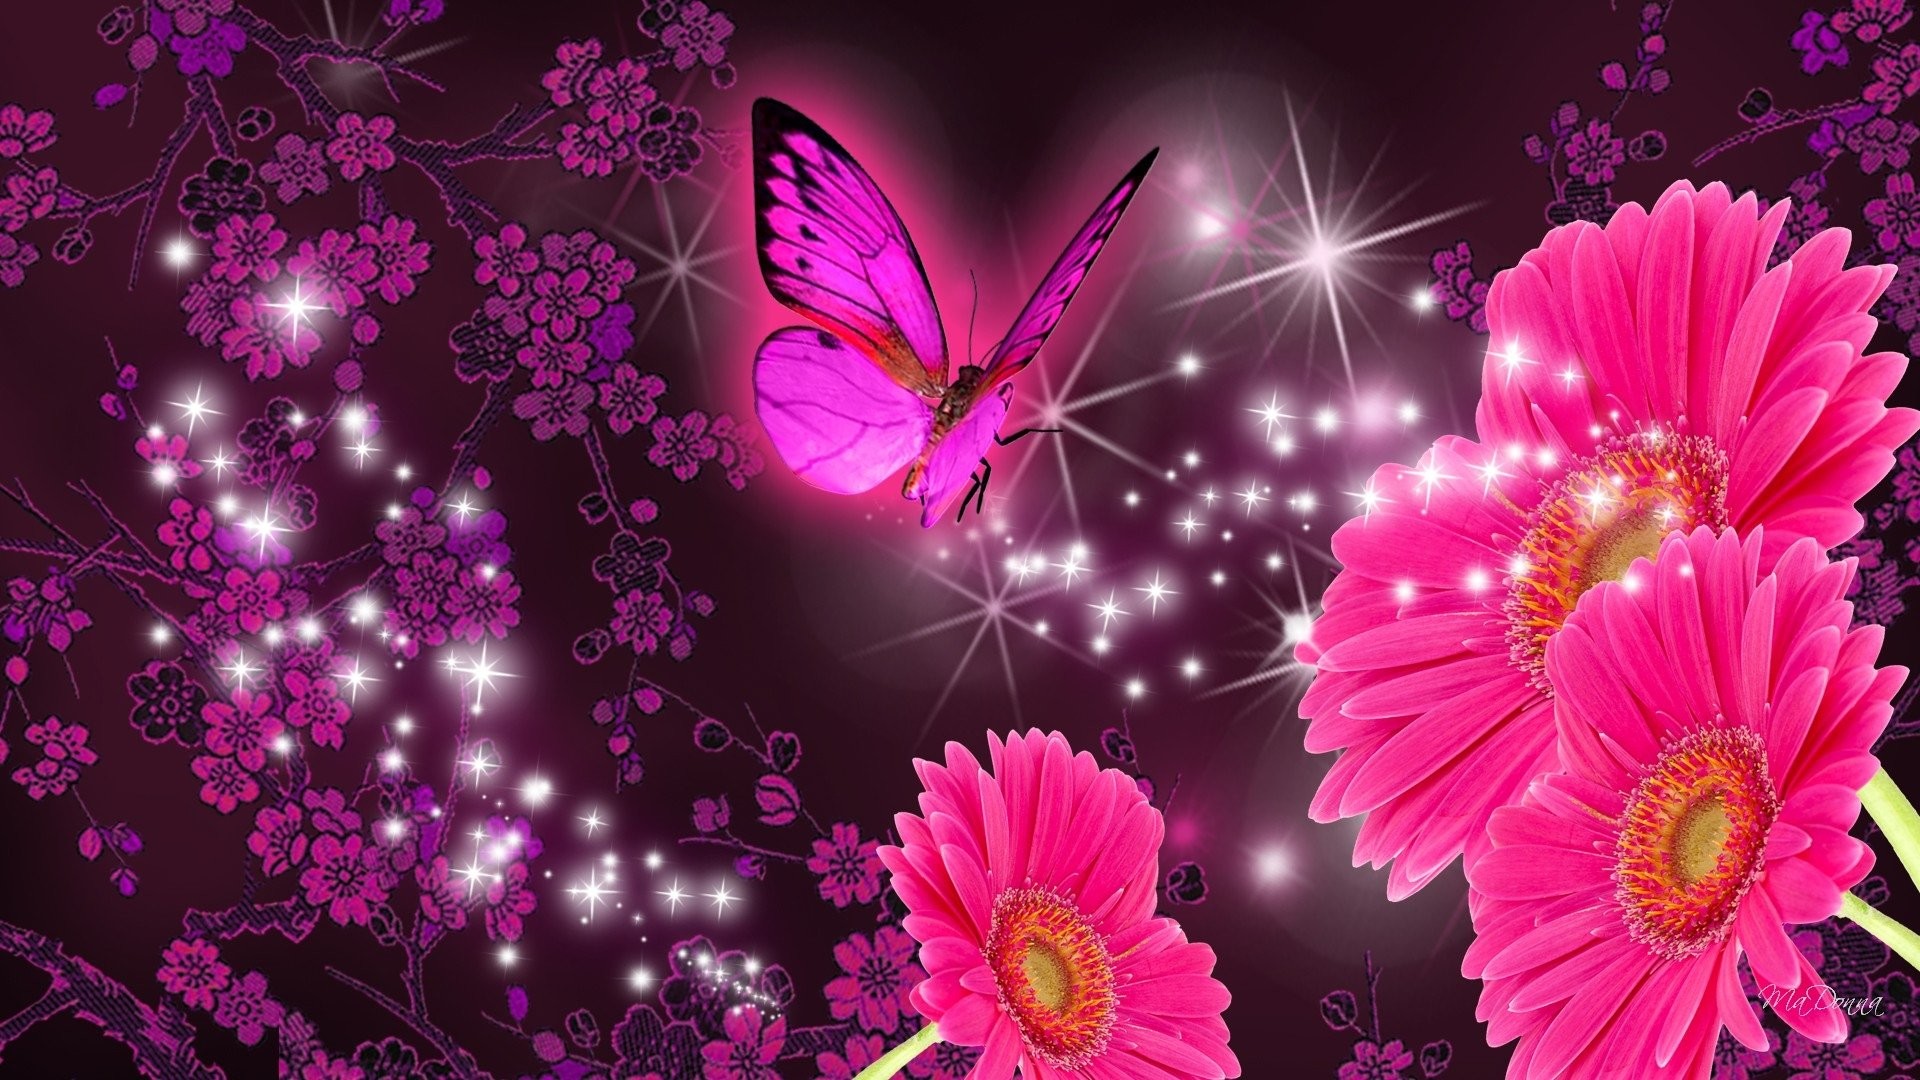 1920x1080 Artistic - Flower Artistic Gerbera Daisy Butterfly Sparkles Wallpaper